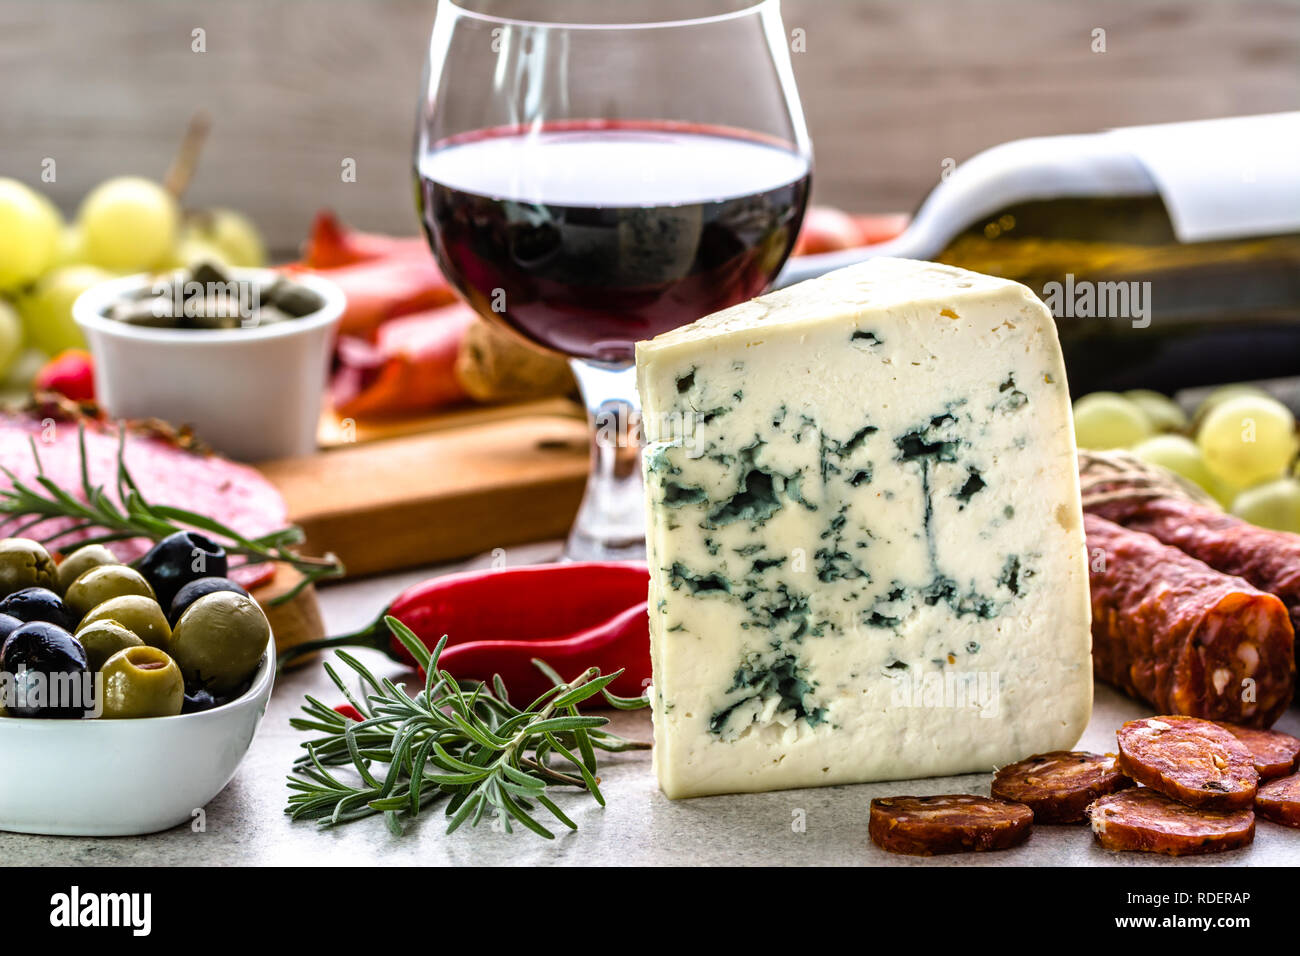 Formaggio blu e vino snack set, antipasto italiano o spagnolo tapas bar, la selezione di cibo sul tavolo nel ristorante Foto Stock